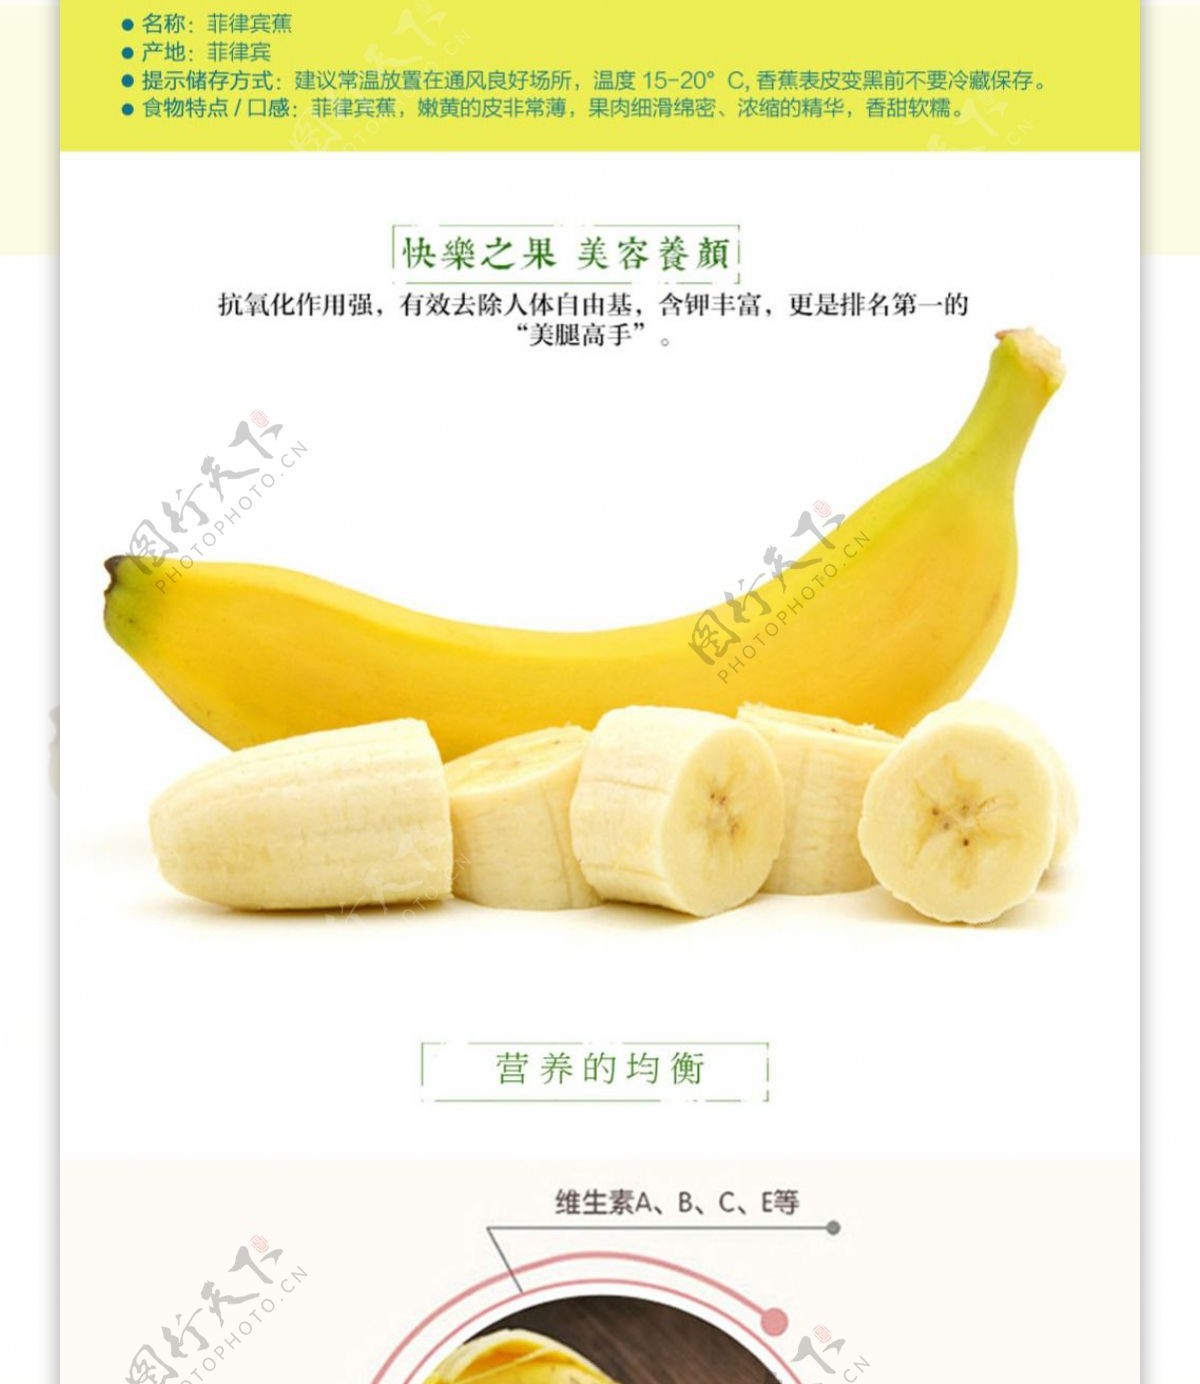 香蕉详情页